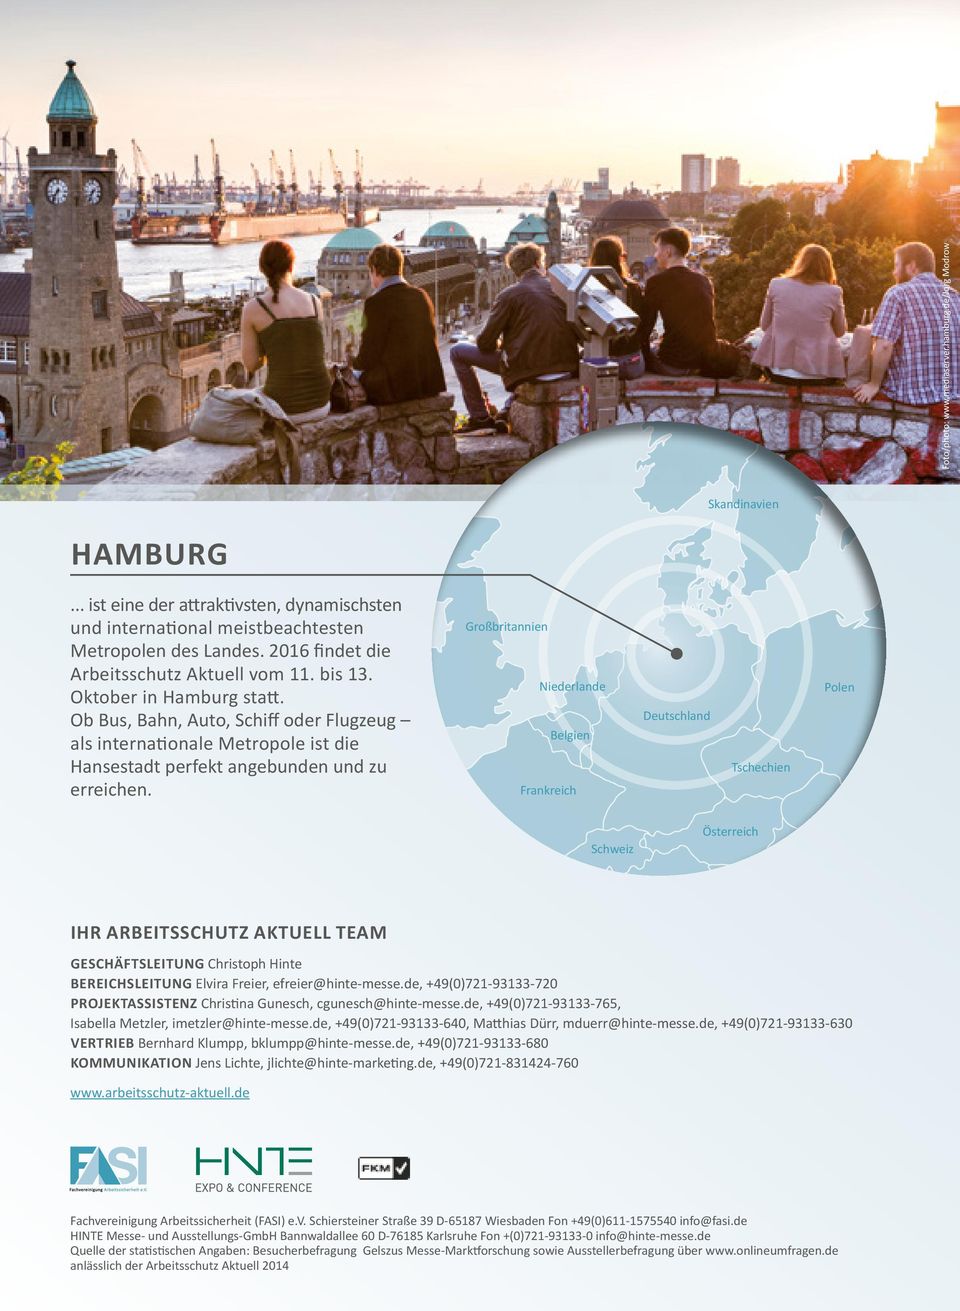 Ob Bus, Bahn, Auto, Schiff oder Flugzeug als internationale Metropole ist die Hansestadt perfekt angebunden und zu erreichen.